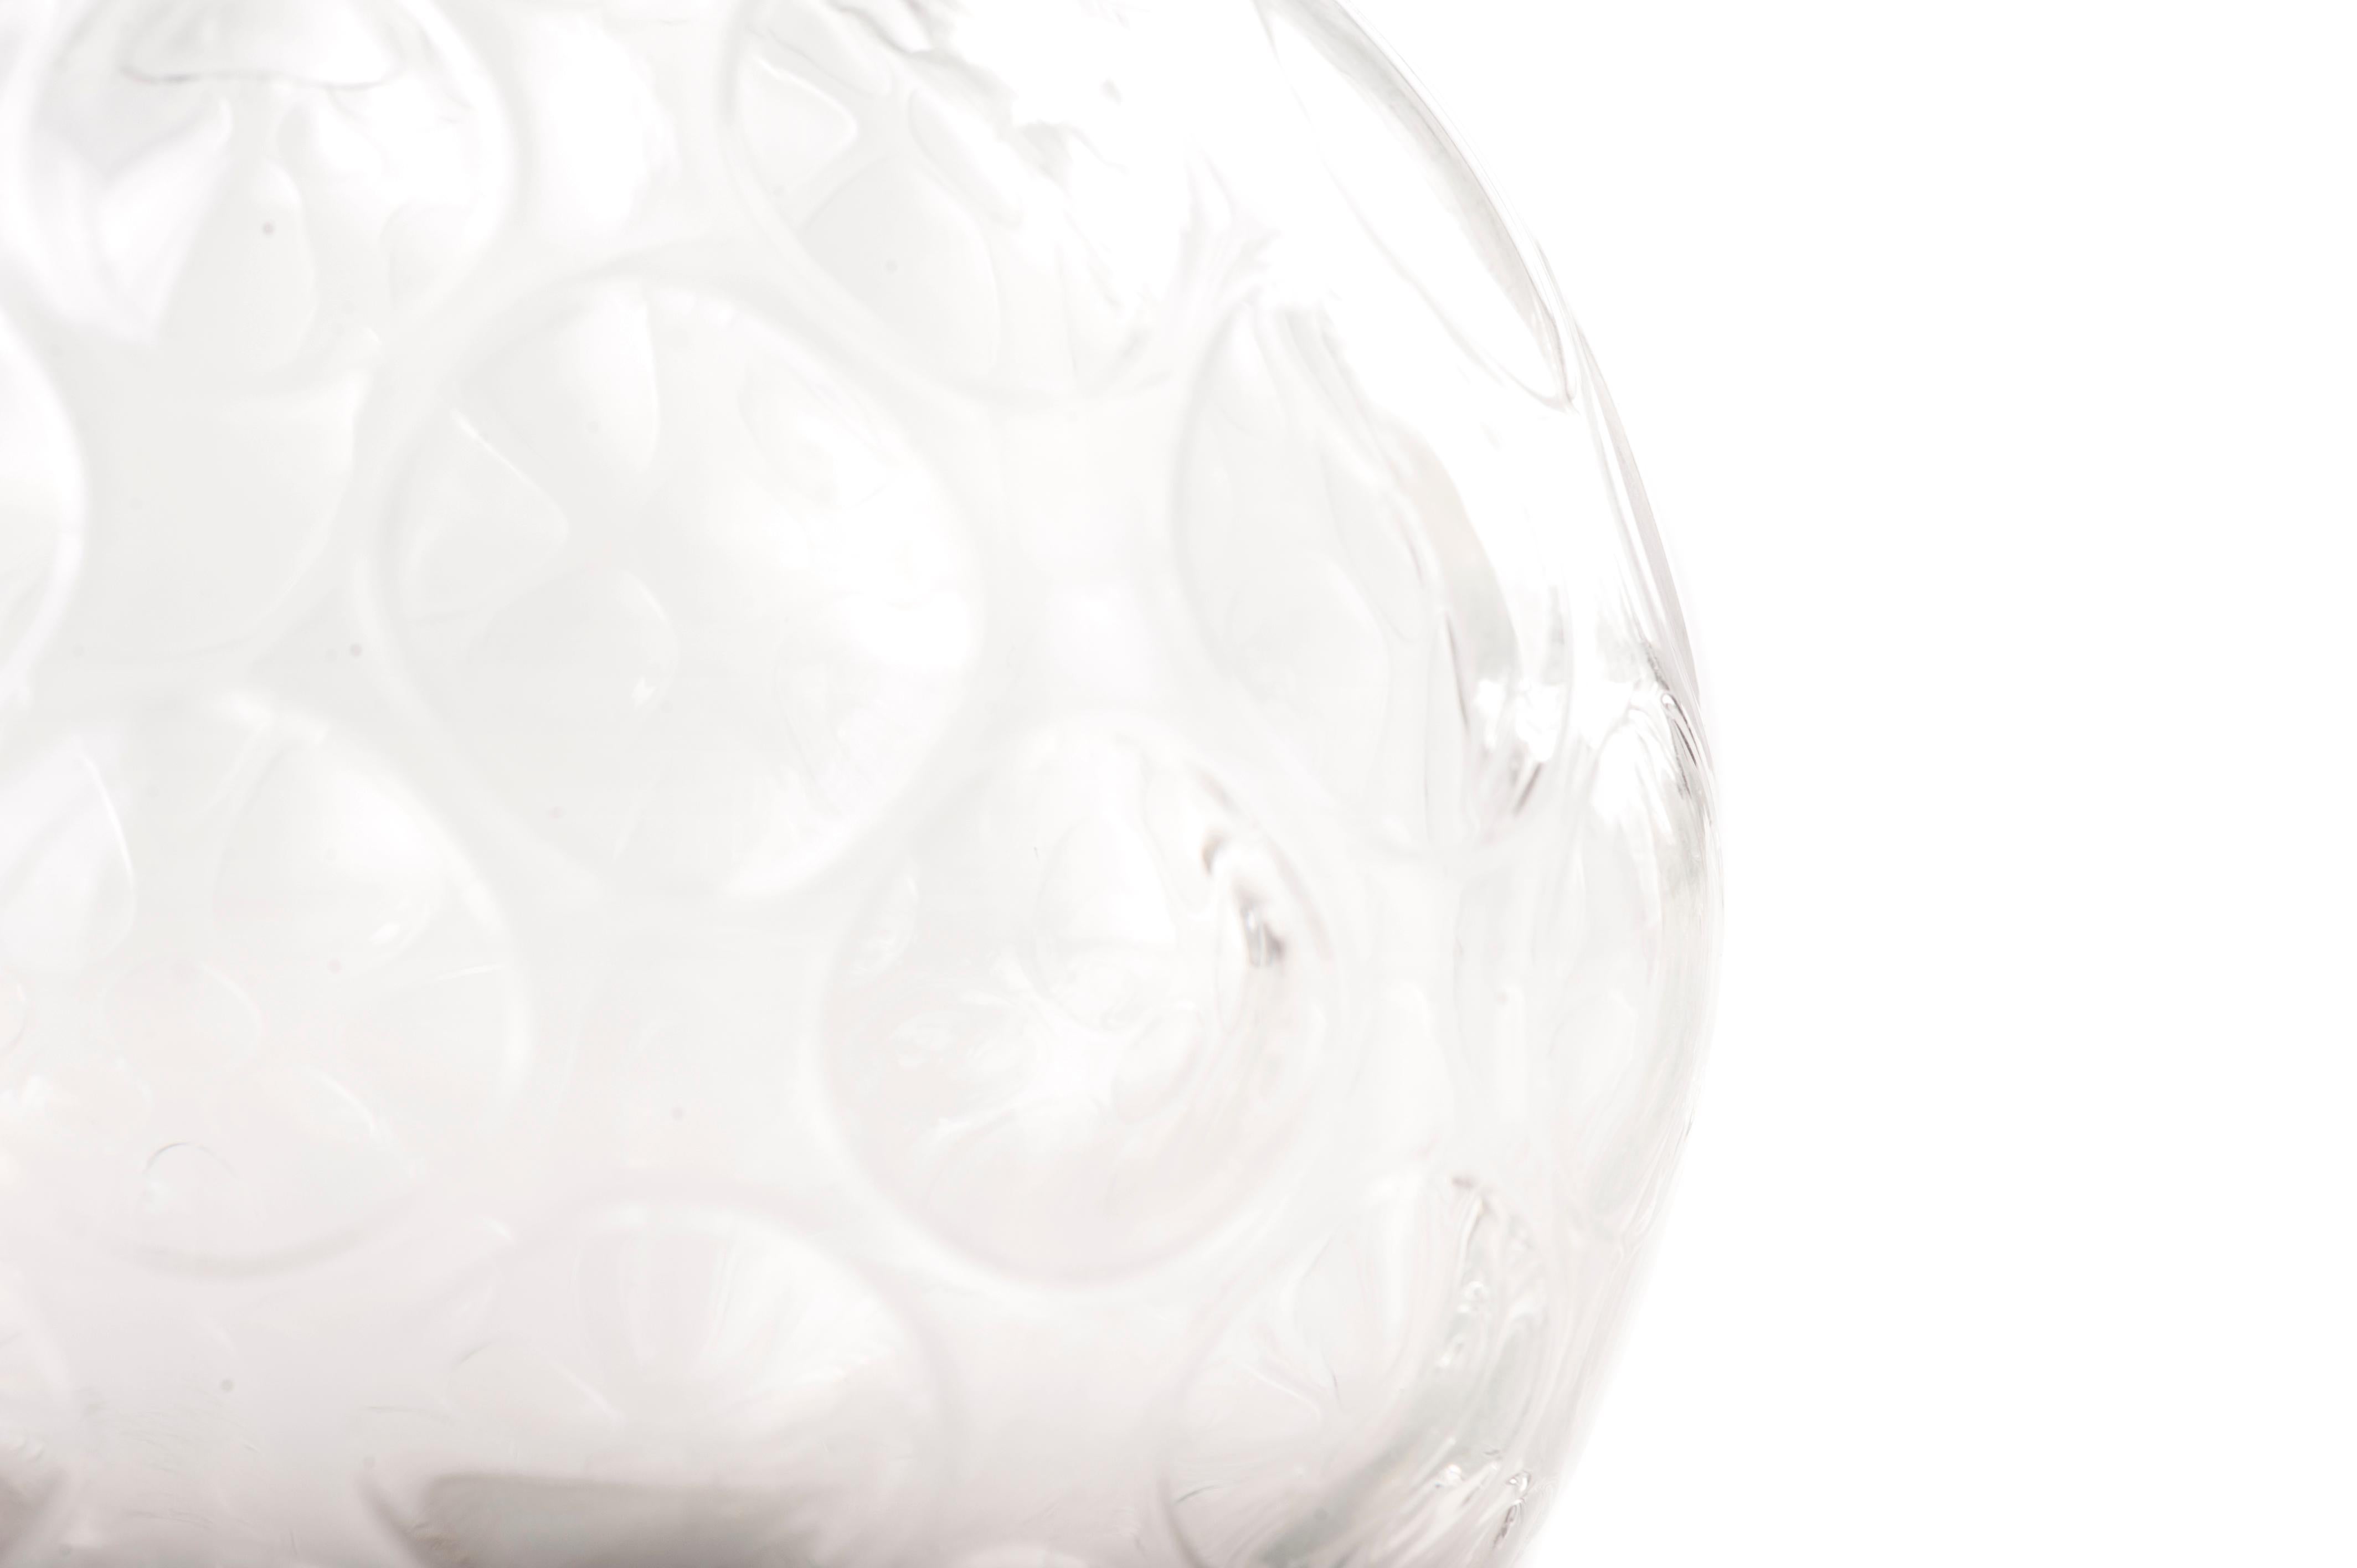 Diese sphärische Vase ist ein wunderschönes Kunstglasstück aus opakem weißem Glas mit Bienenstockmotiv und gefranstem Mund.

Realisiert von einem nordeuropäischen Hersteller in den 1970er Jahren.
In ausgezeichnetem Zustand.

Dieses Objekt wird aus